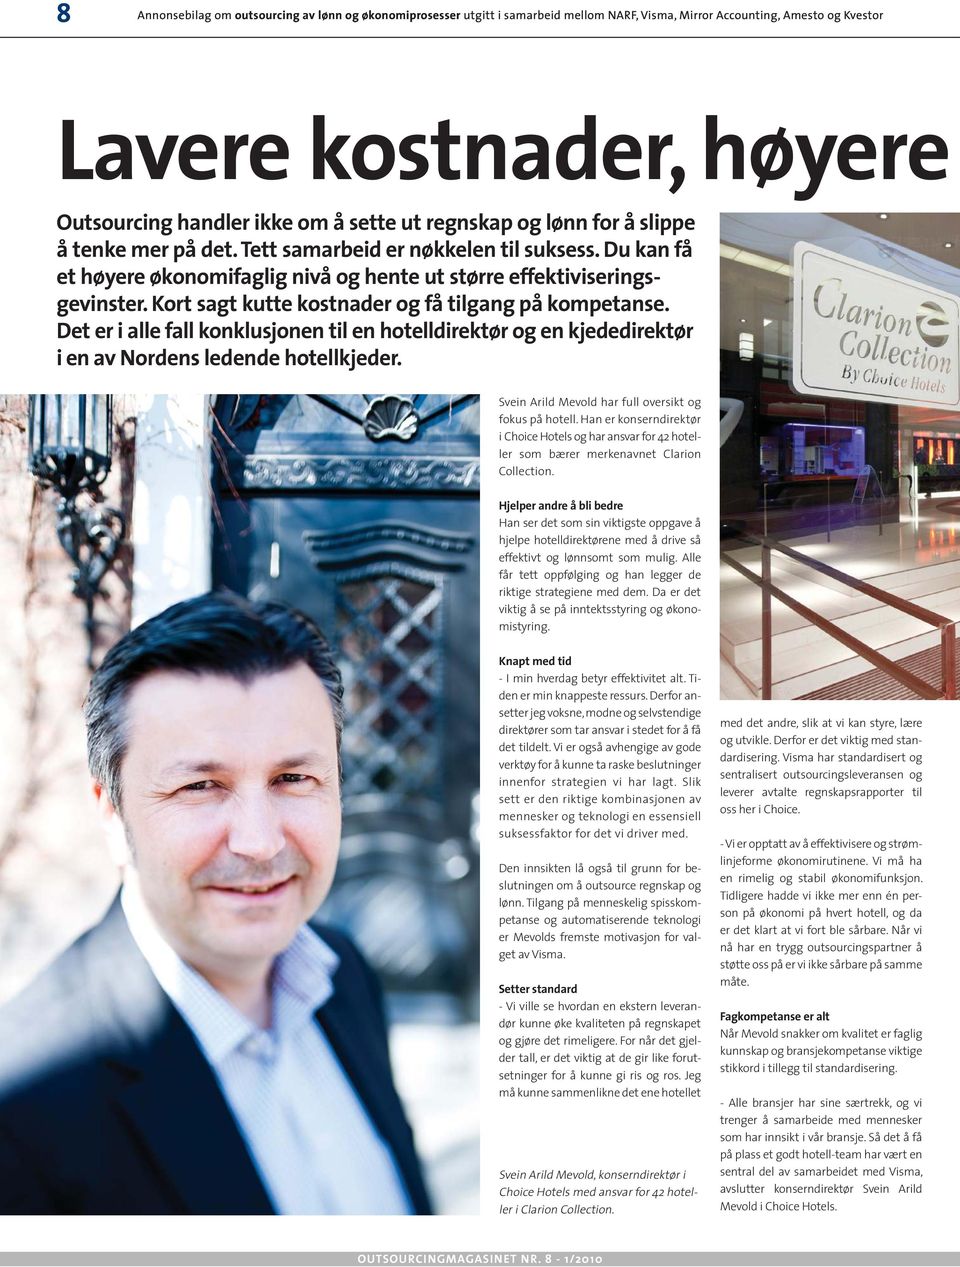 Det er i alle fall konklusjonen til en hotelldirektør og en kjededirektør i en av Nordens ledende hotellkjeder. Svein Arild Mevold har full oversikt og fokus på hotell.